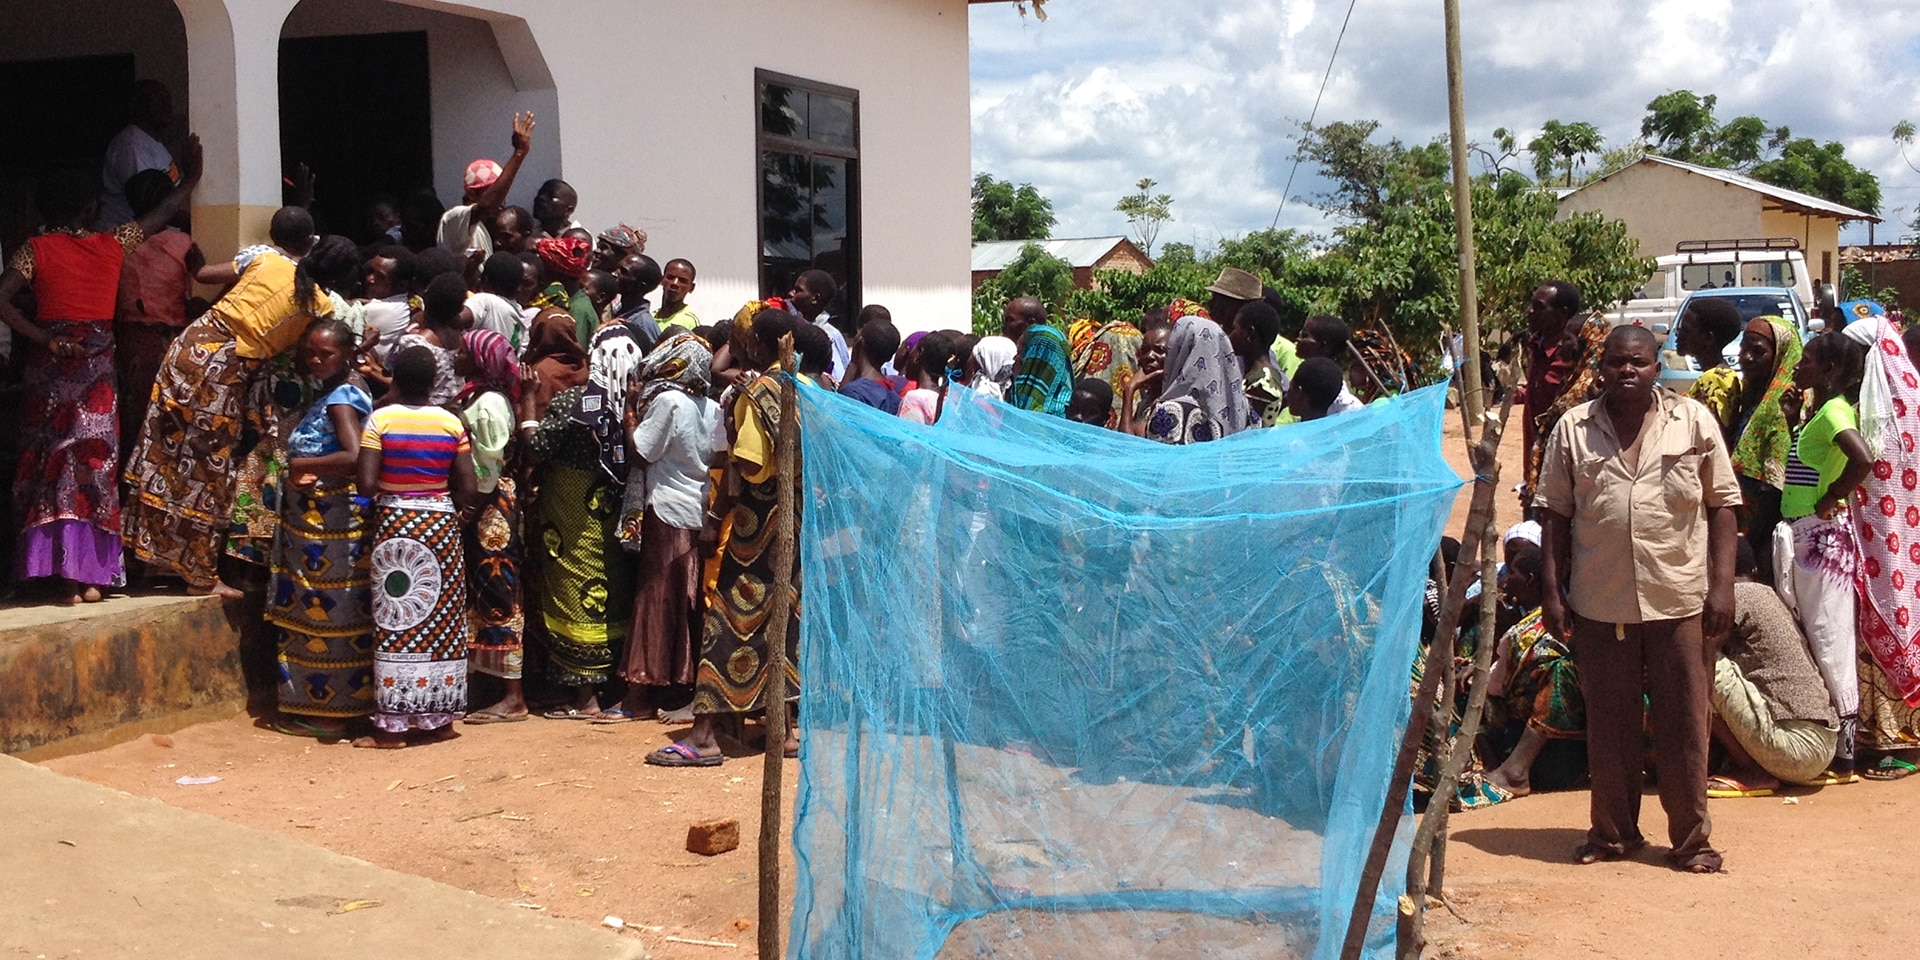 Dans un village de Tanzanie, de nombreuses personnes font la queue pour récupérer des moustiquaires. Au premier plan, on aperçoit une grande moustiquaire bleue.